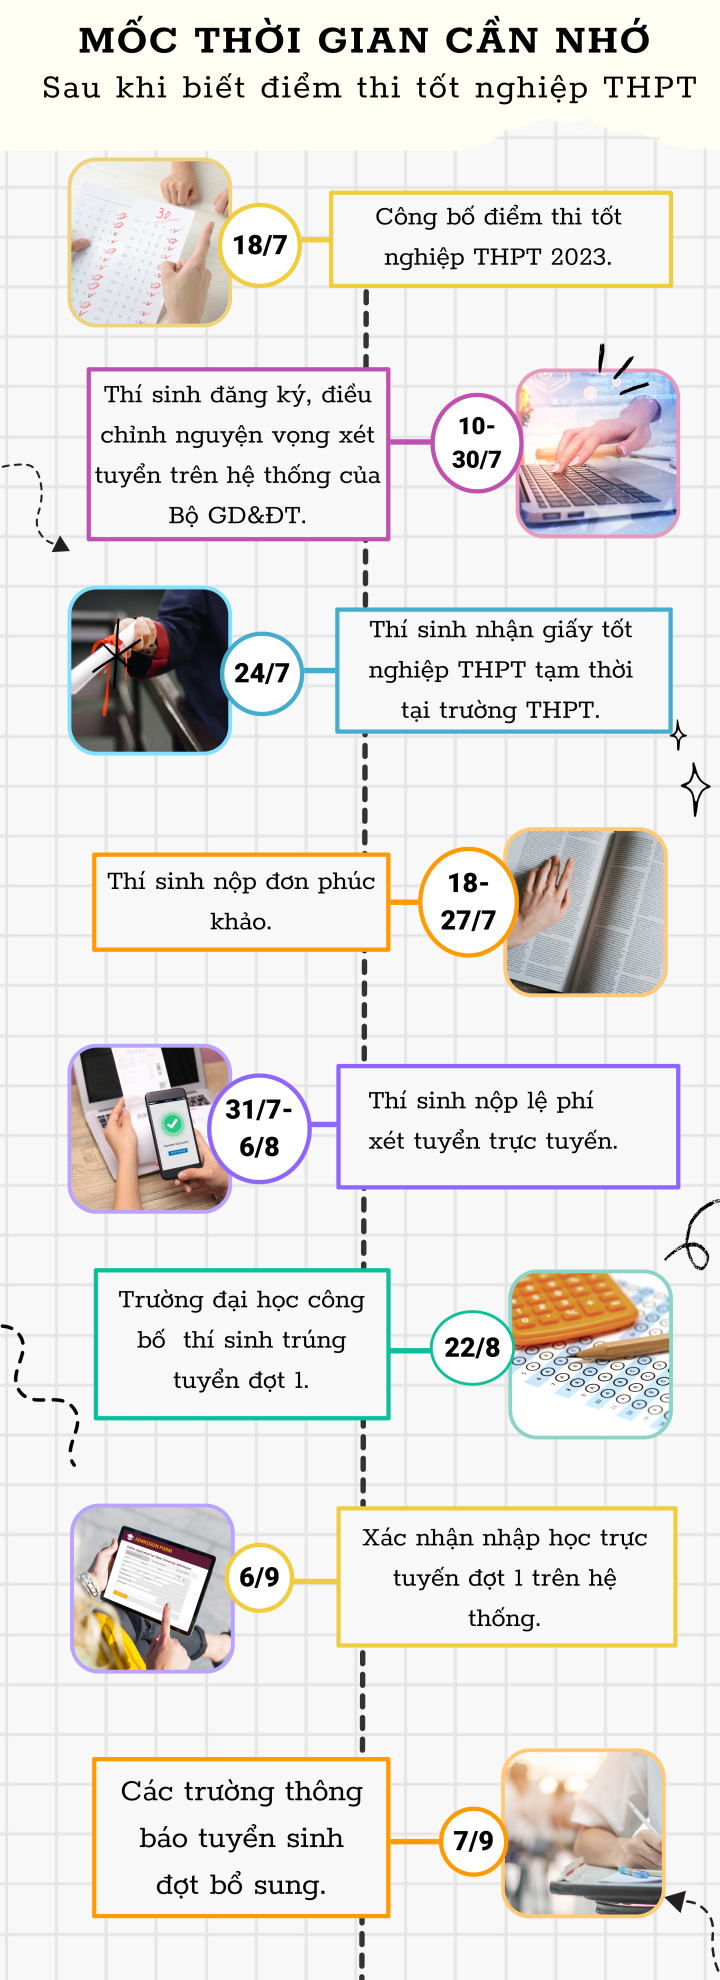 Infographic: Các mốc thời gian quan trọng sau khi biết điểm thi tốt nghiệp THPT - Ảnh 1.